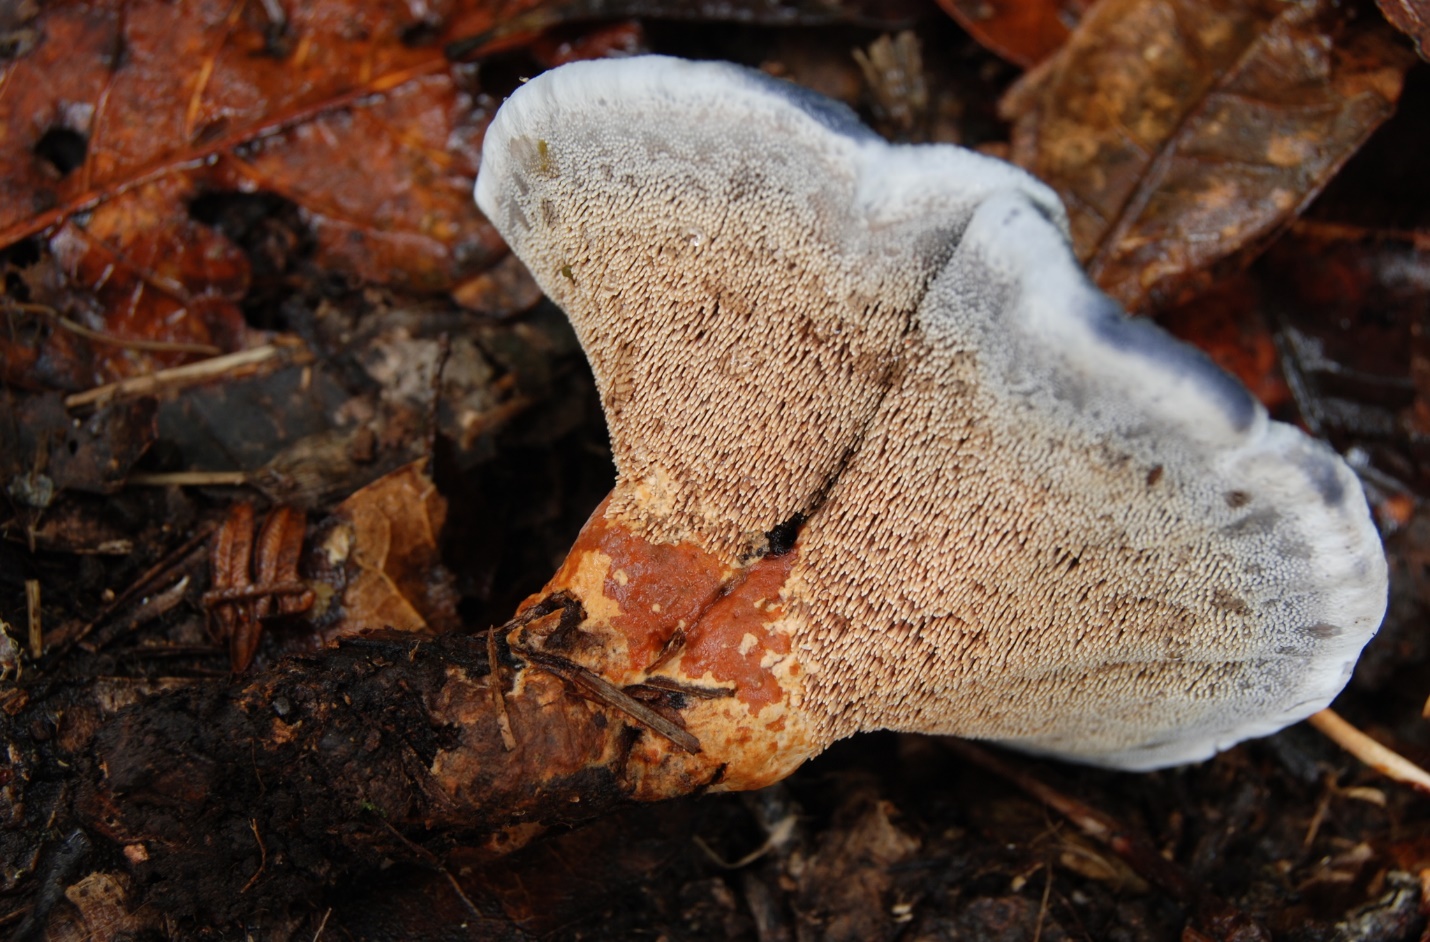 Гиднеллум пека: описание необычного гриба